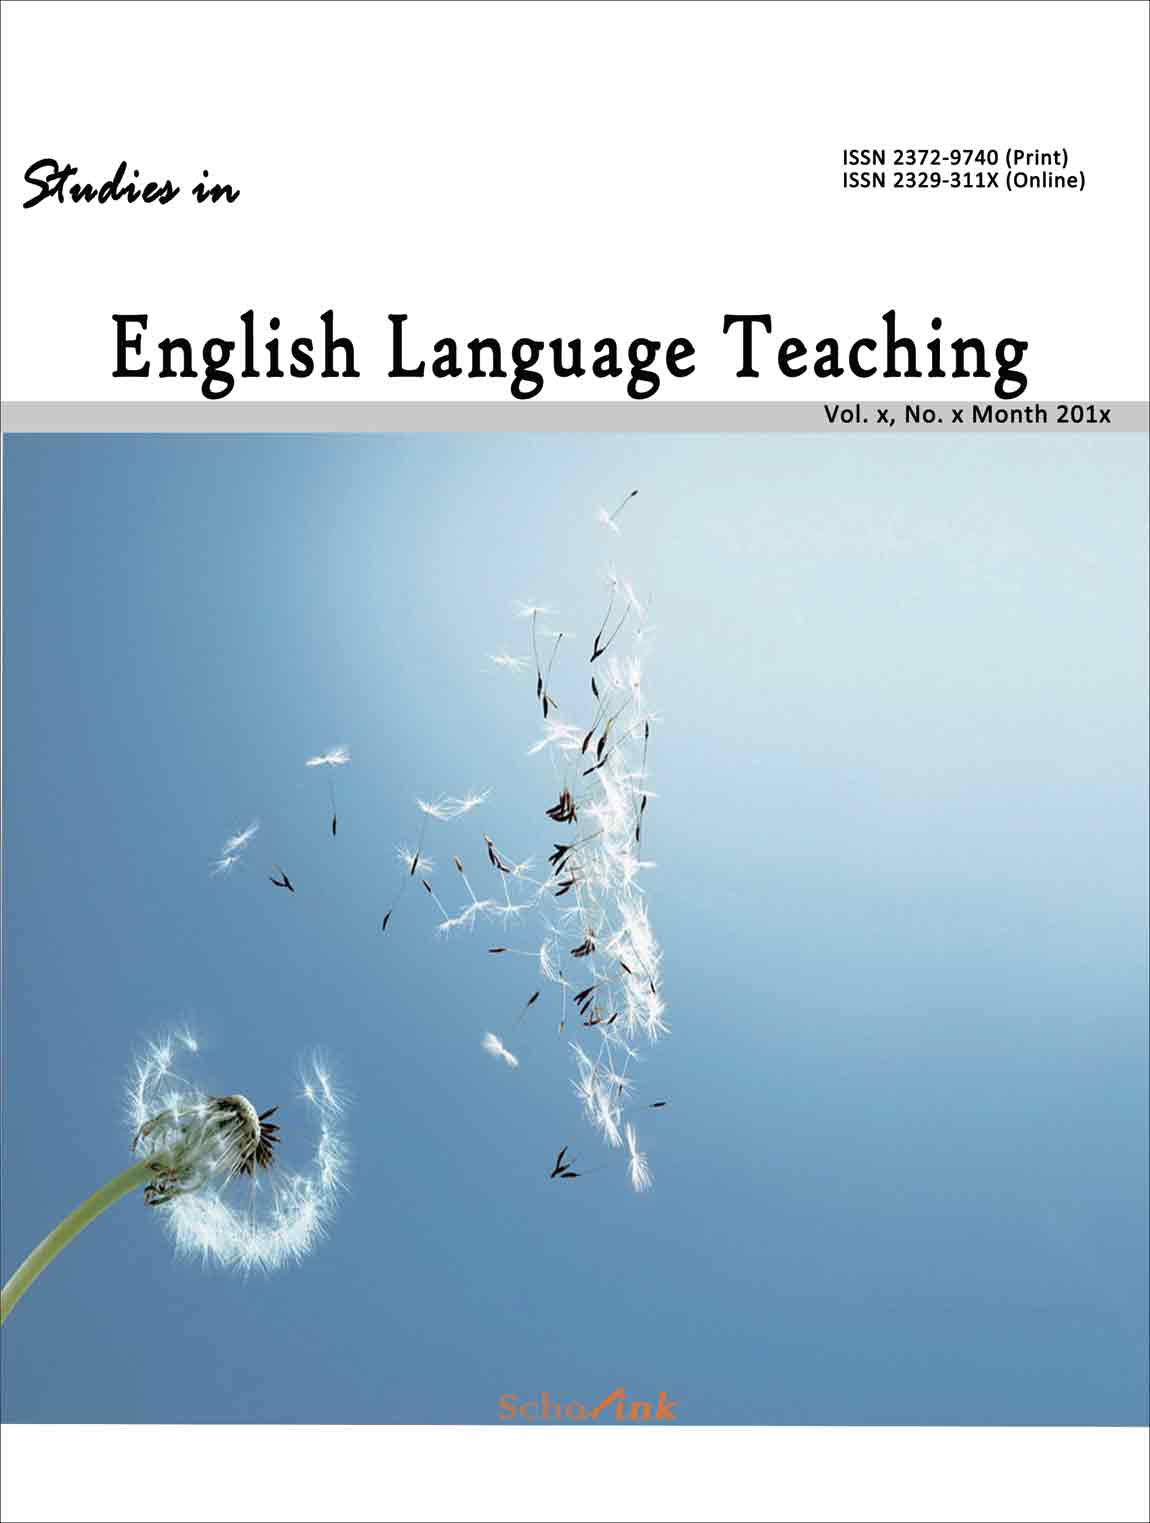 Studies in English Language Teaching